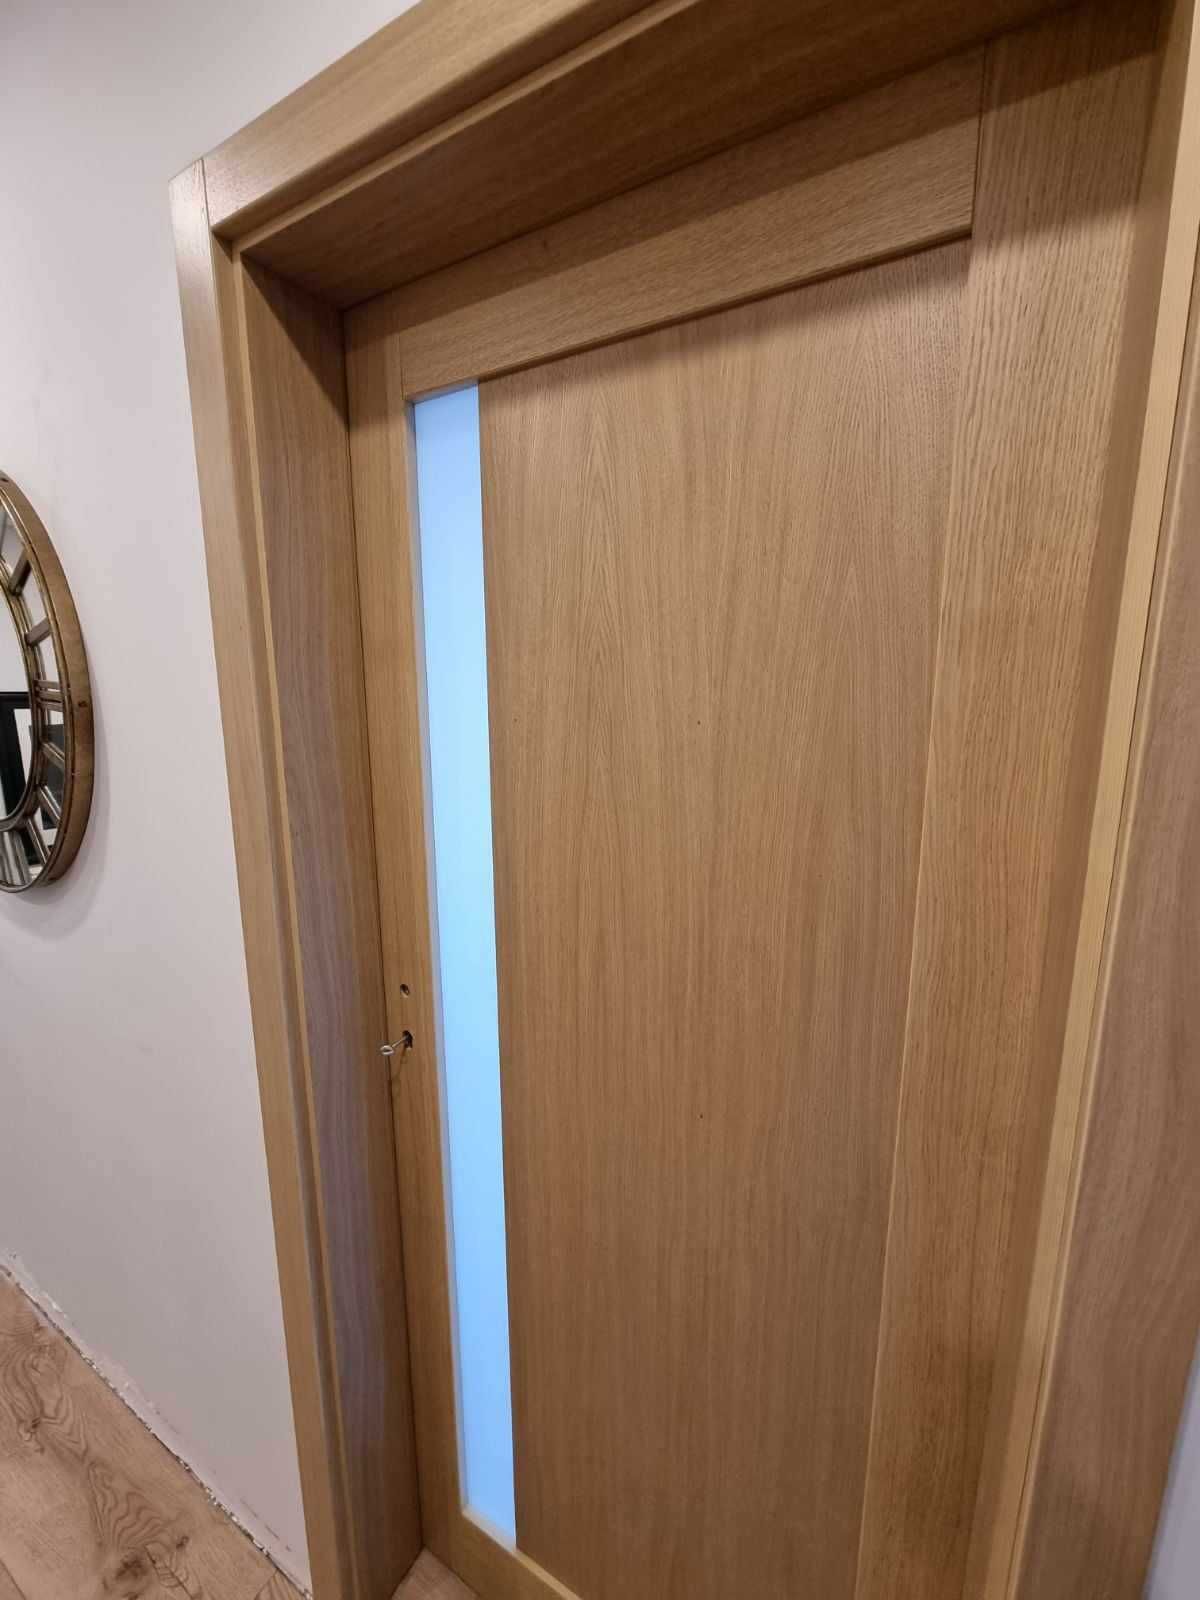 Drzwi wewnętrzne drewniane na okleinie dębowej